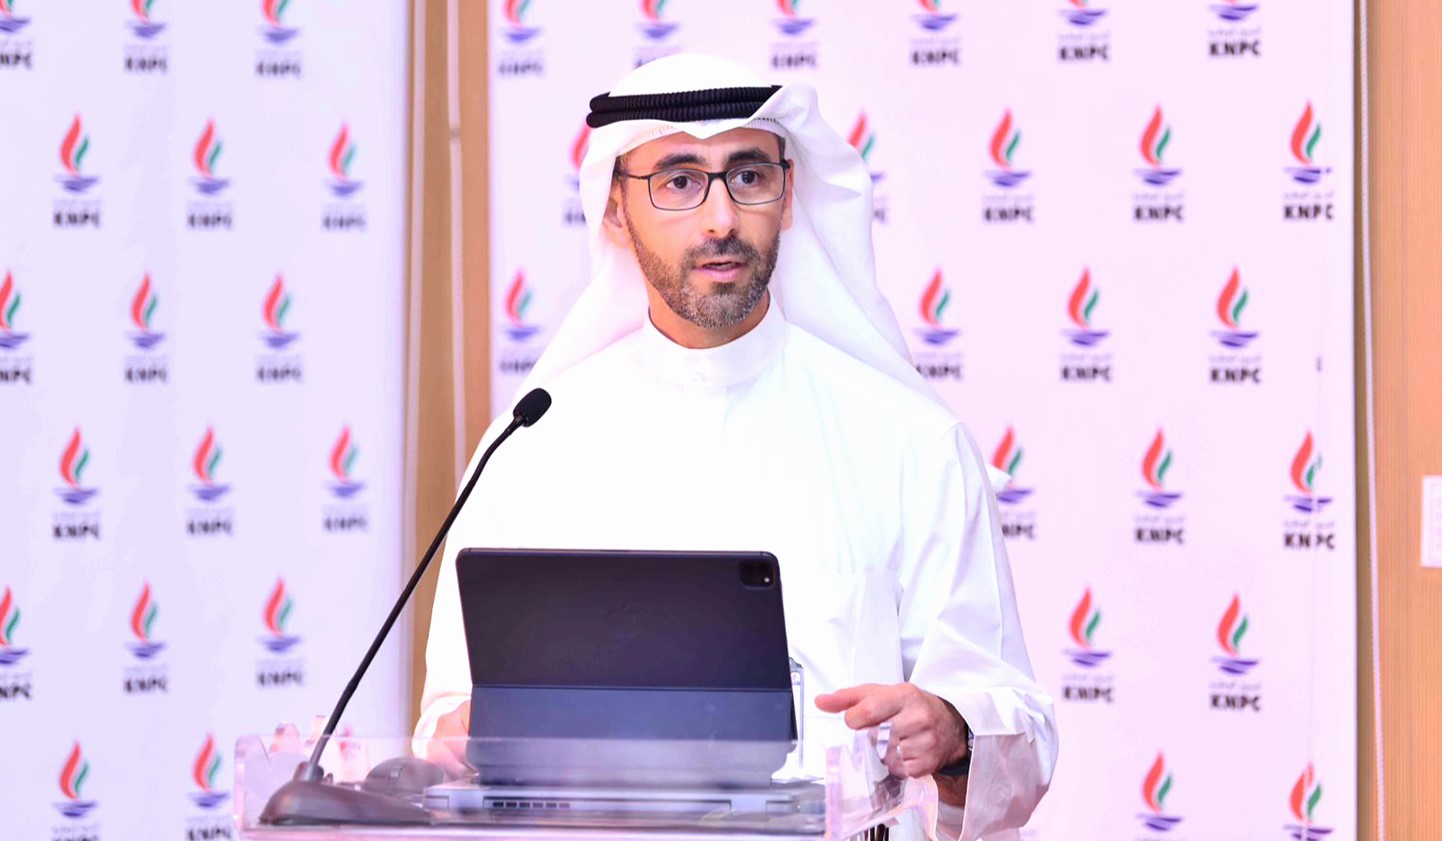 Le directeur général de la KPC, le Cheikh Nawaf Saoud Al-Nasser Al-Sabah.